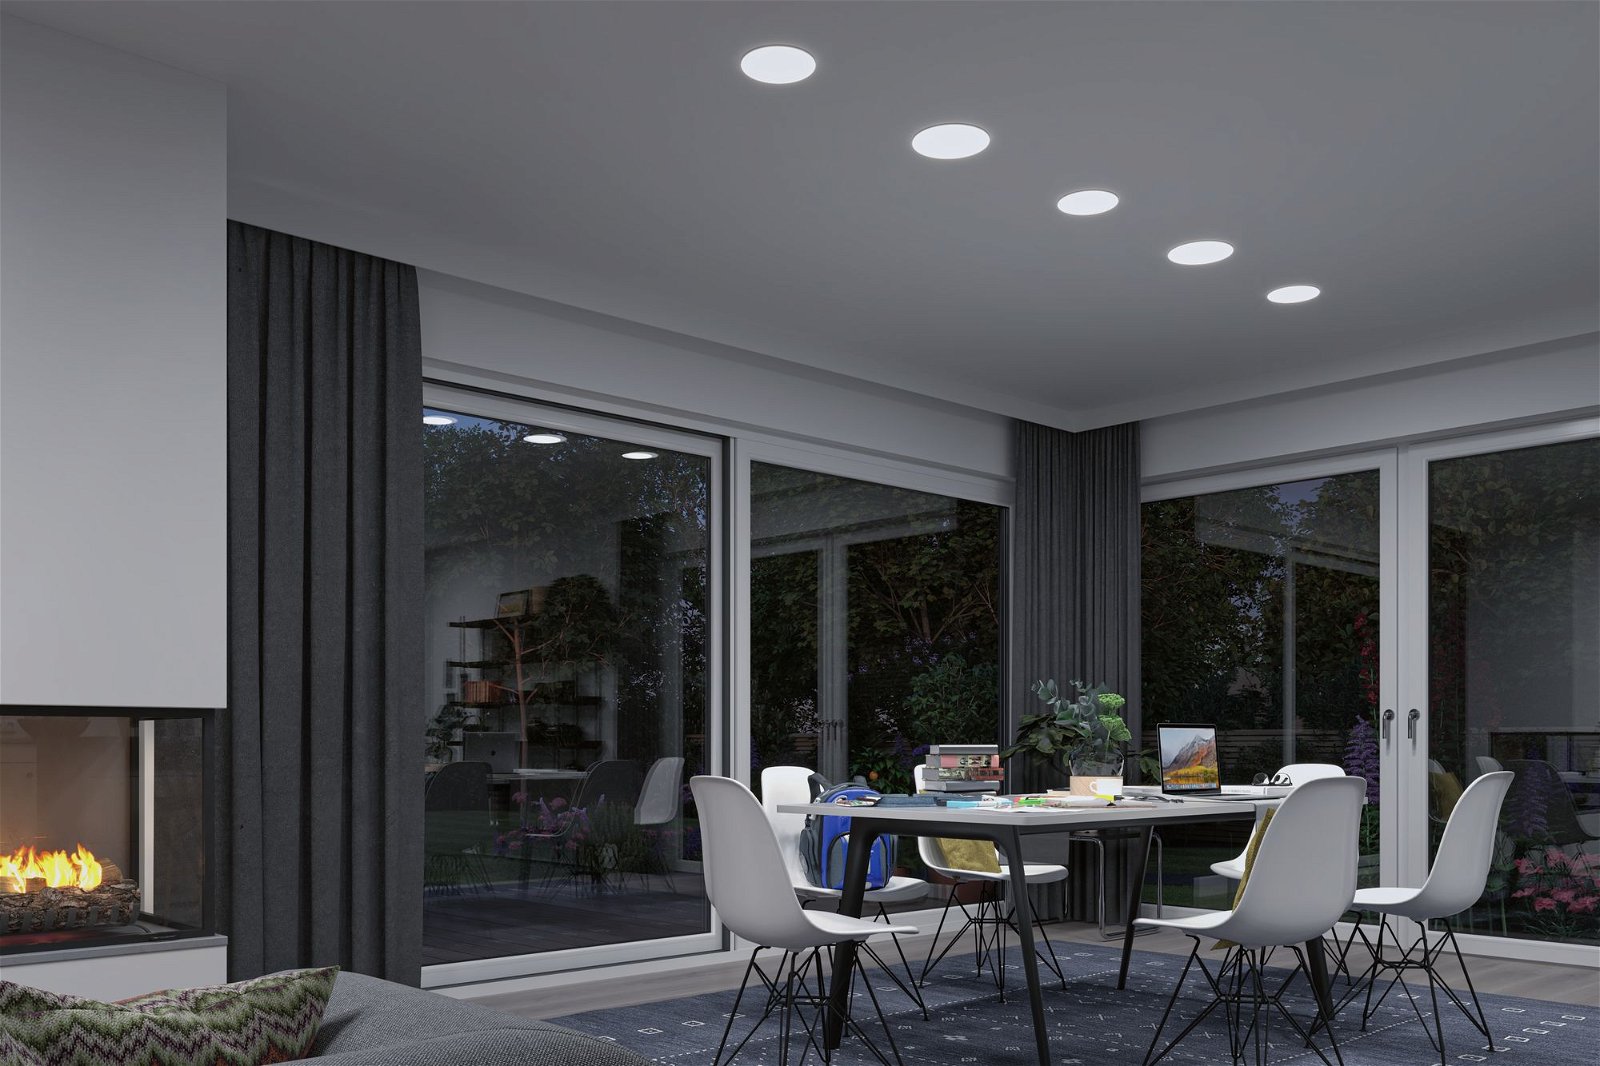 VariFit Panneau encastré LED Smart Home Zigbee Veluna IP44 rond 215mm 17W 1300lm Tunable White Satiné gradable